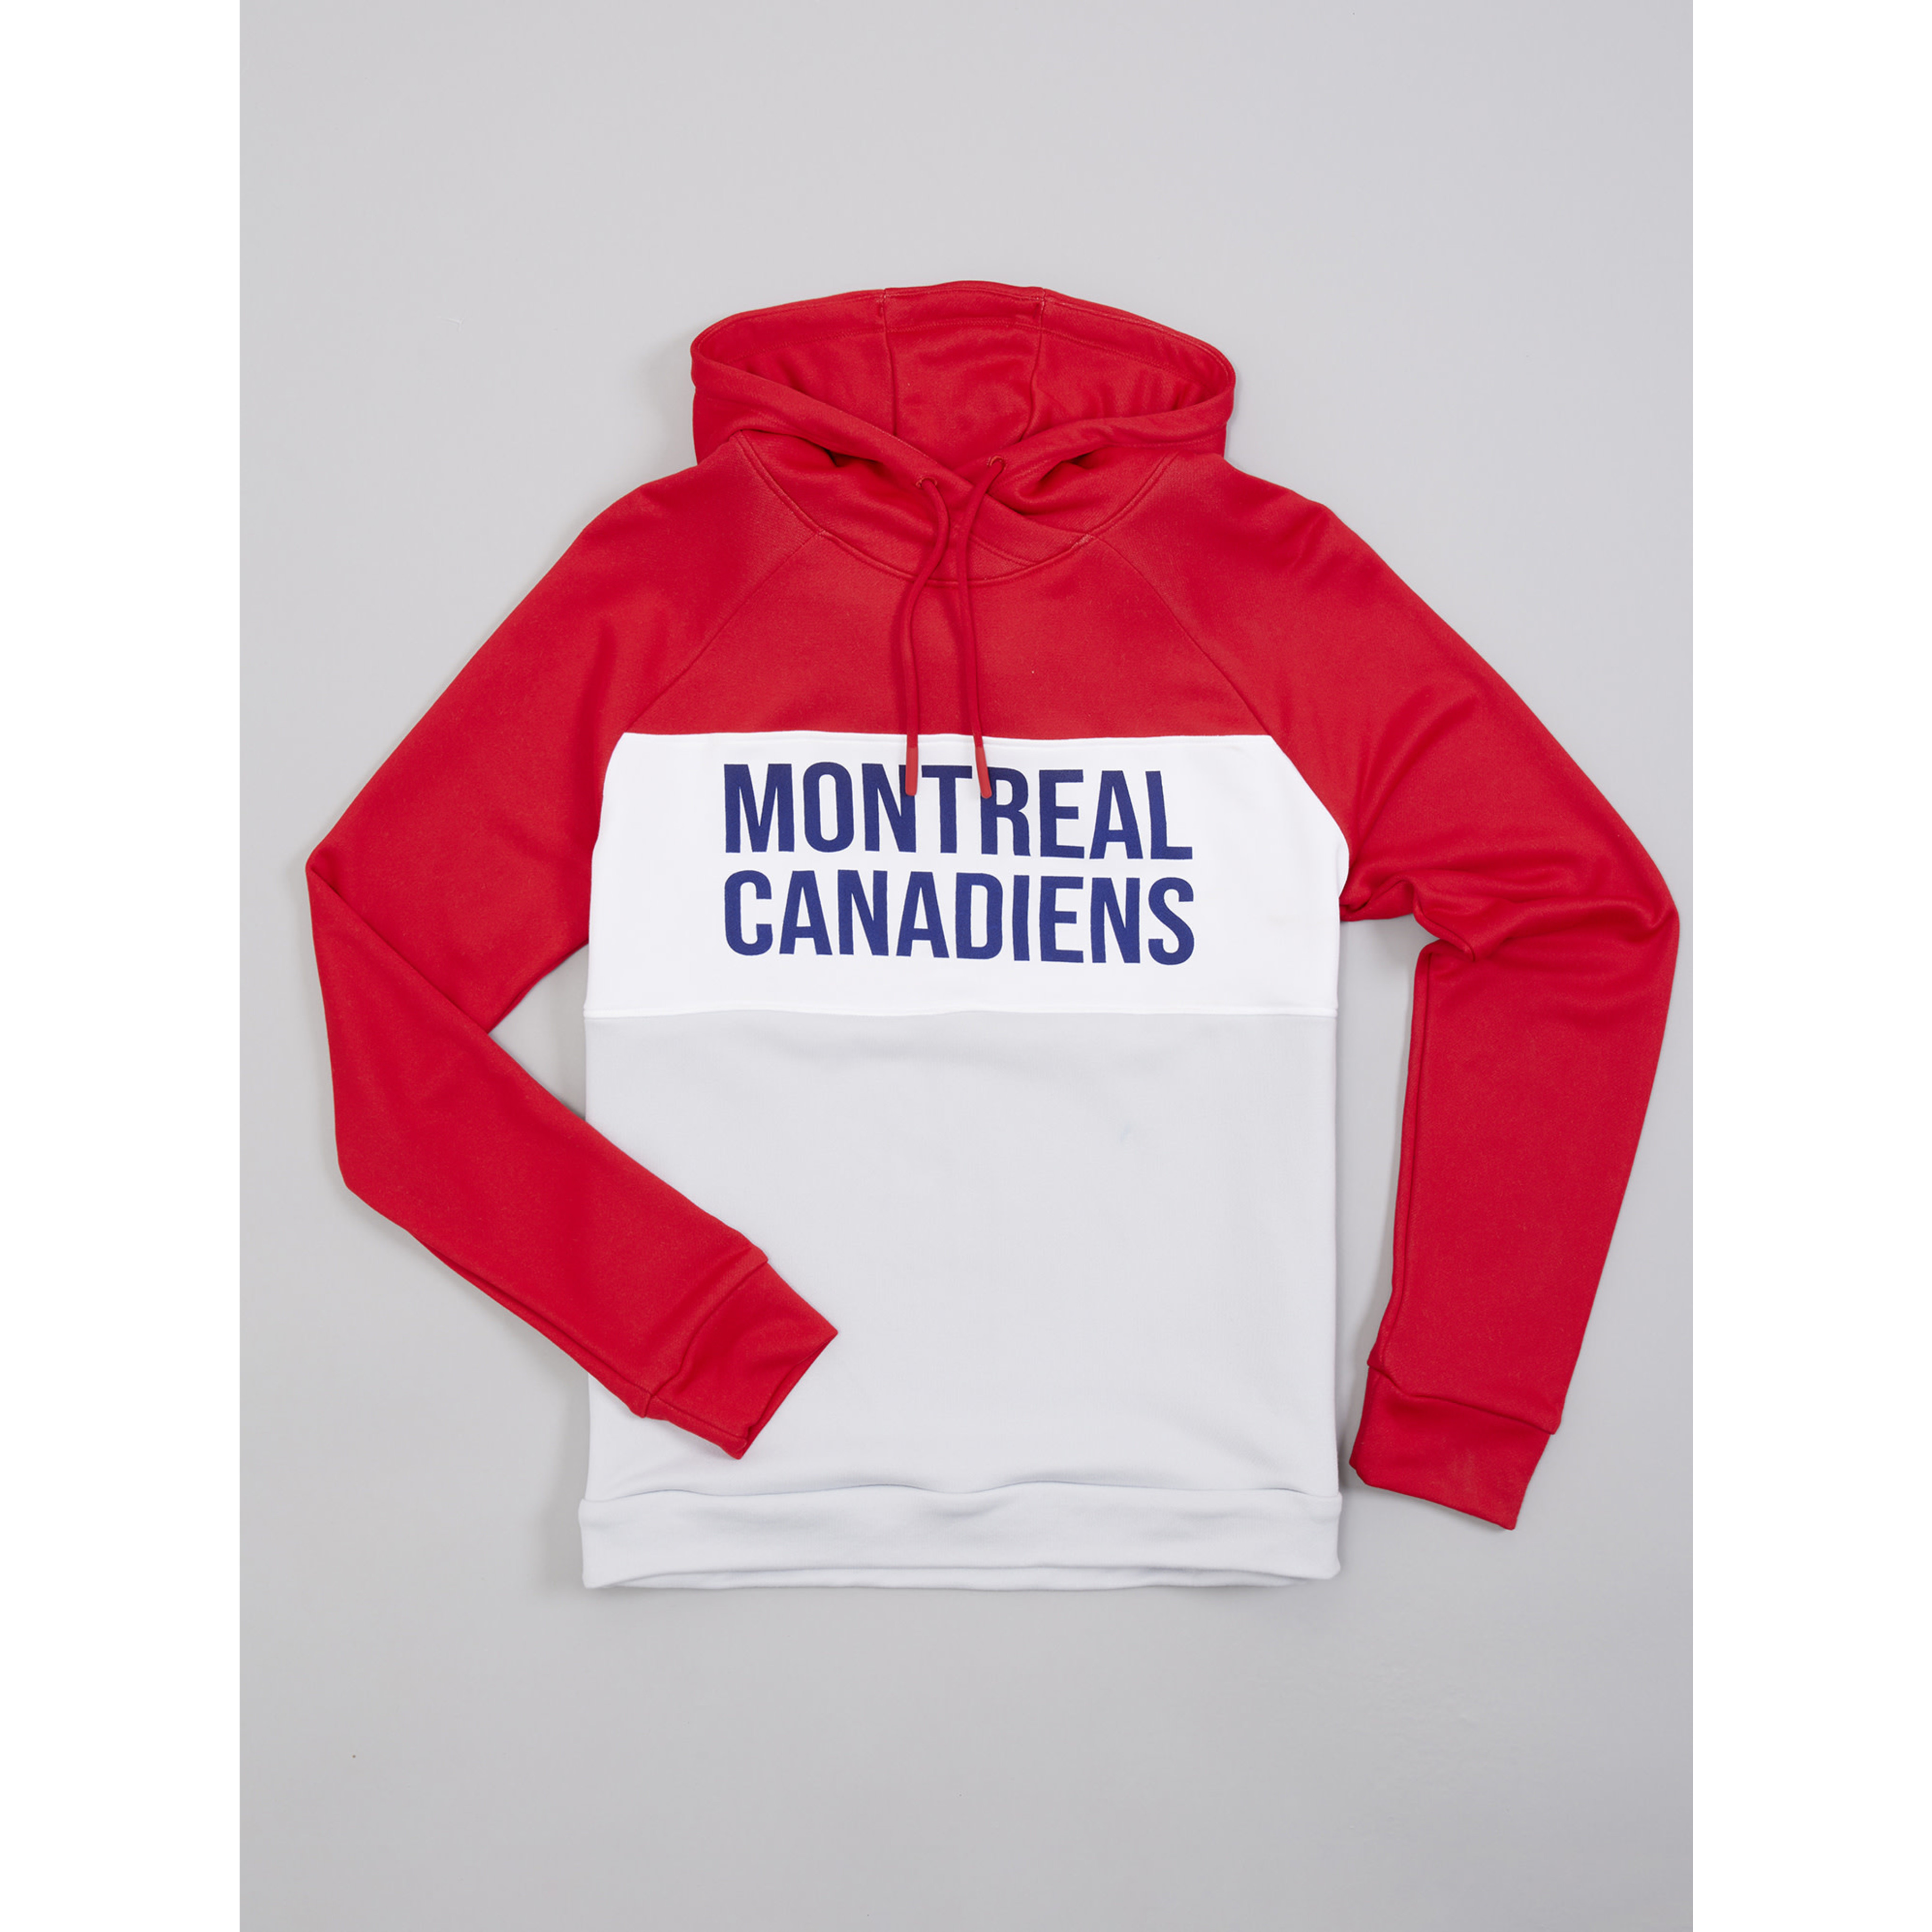 https://cdn.shoplightspeed.com/shops/608428/files/53866791/4096x4096x2/under-armour-ua-qualifier-fleece-montreal-canadien.jpg